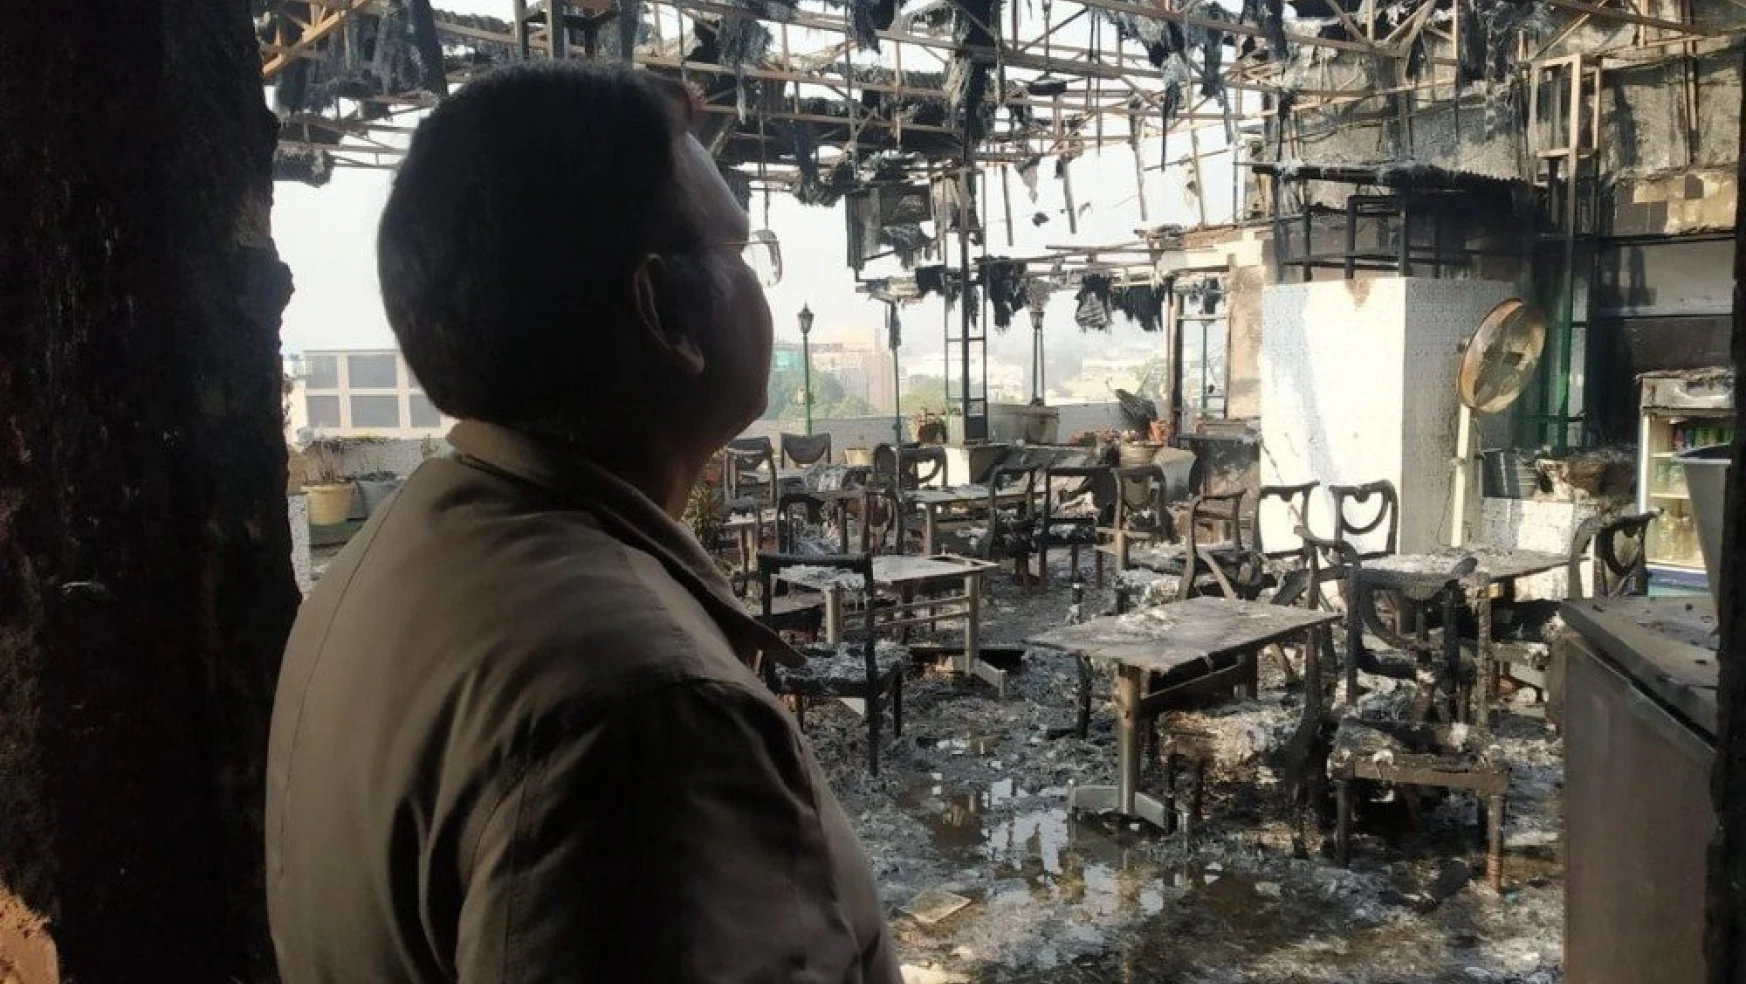 Hindistan'da otel yangını: 17 ölü